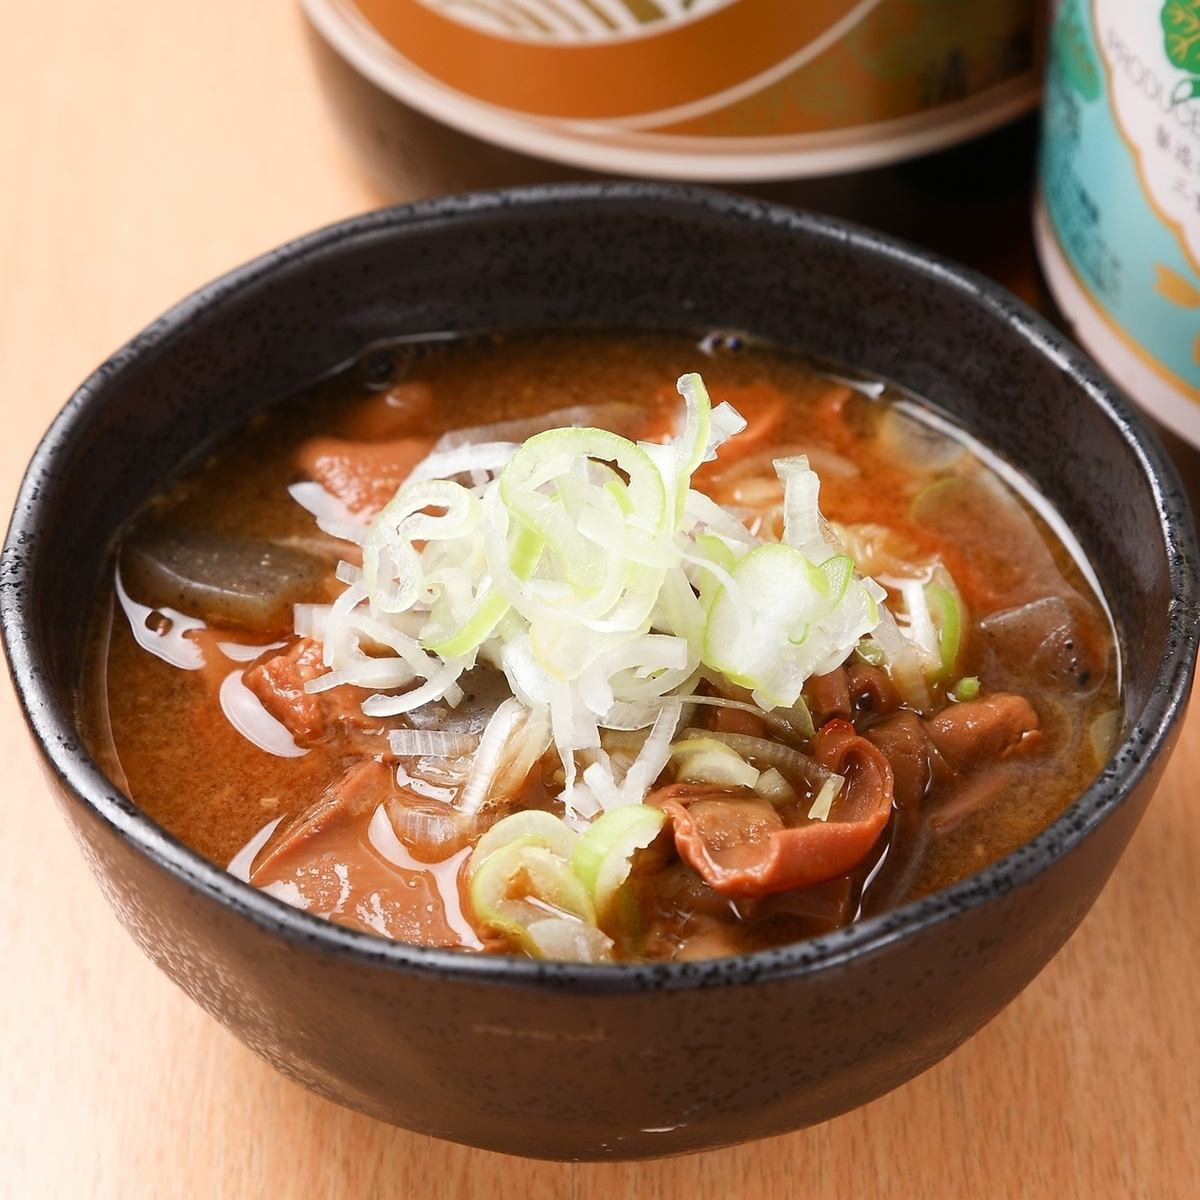 【기타히로시마역에서 도보 3분】모츠 조림을 메인으로 다양한 장르의 요리를 제공